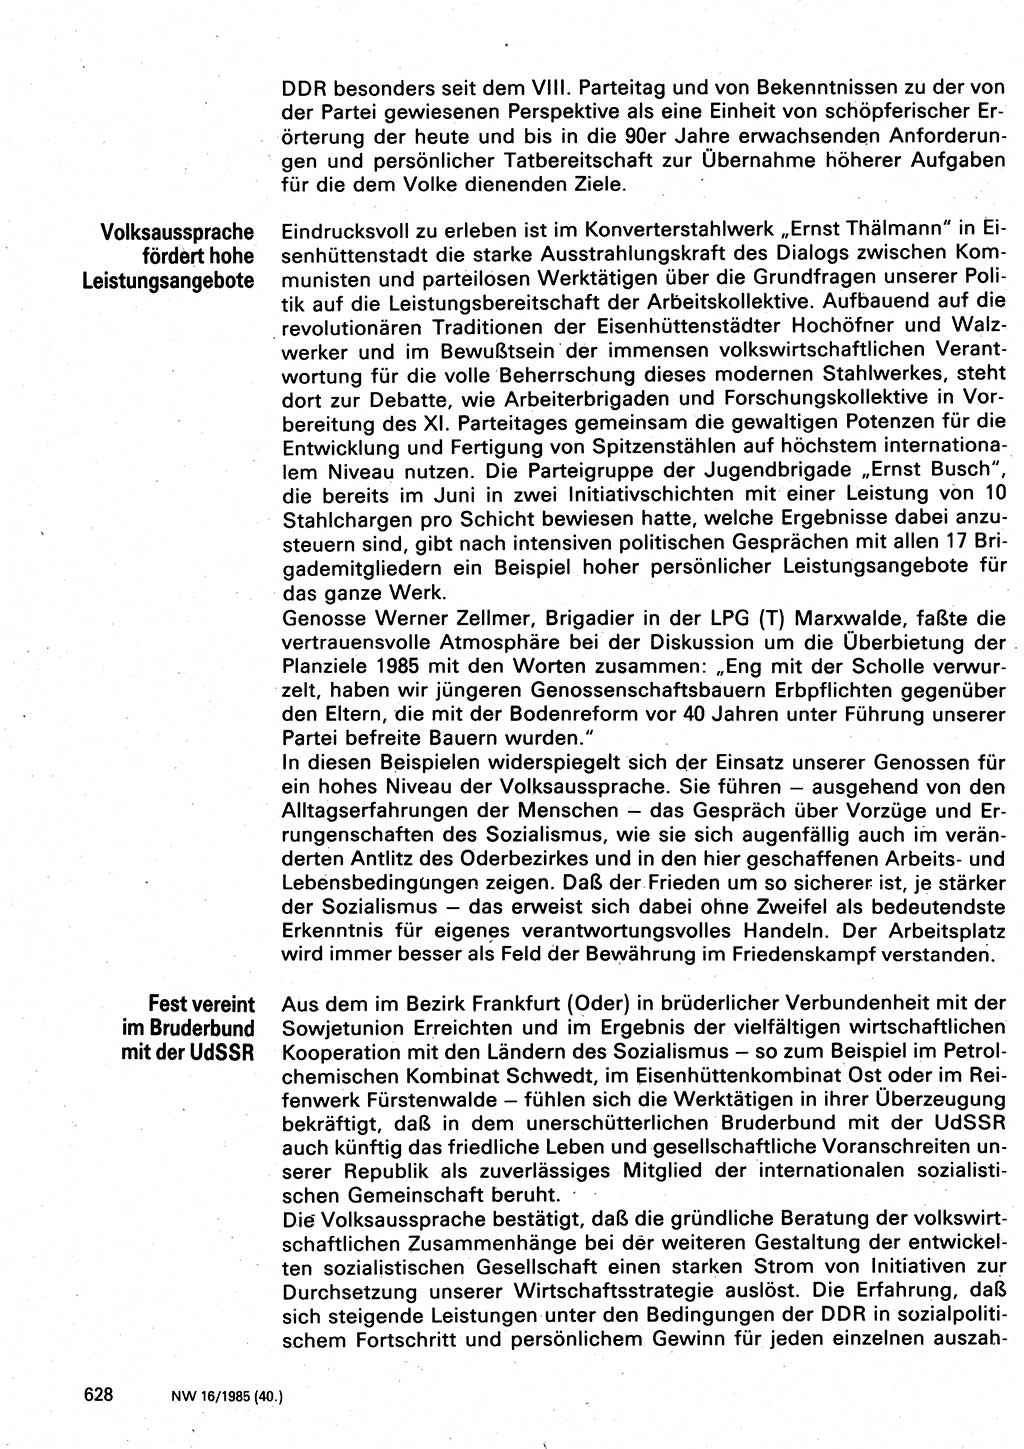 Neuer Weg (NW), Organ des Zentralkomitees (ZK) der SED (Sozialistische Einheitspartei Deutschlands) für Fragen des Parteilebens, 40. Jahrgang [Deutsche Demokratische Republik (DDR)] 1985, Seite 628 (NW ZK SED DDR 1985, S. 628)